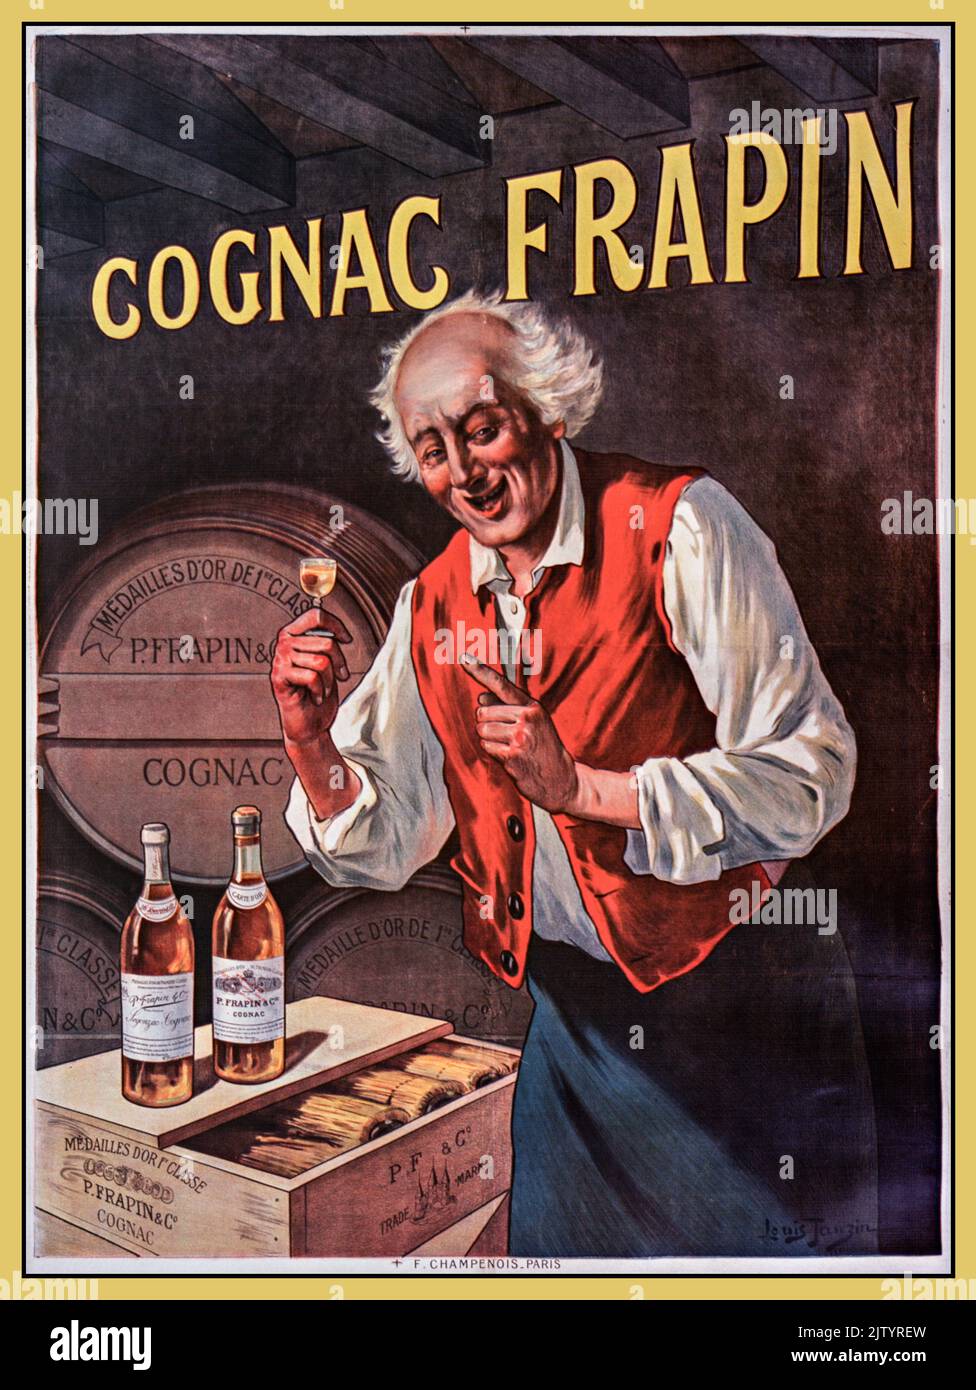 COGNAC FRAPIN Vintage Französische Alkoholgetränke Werbeplakat für Cognac. Cognac Frapin - von Tauzin Louis (1900). Stockfoto